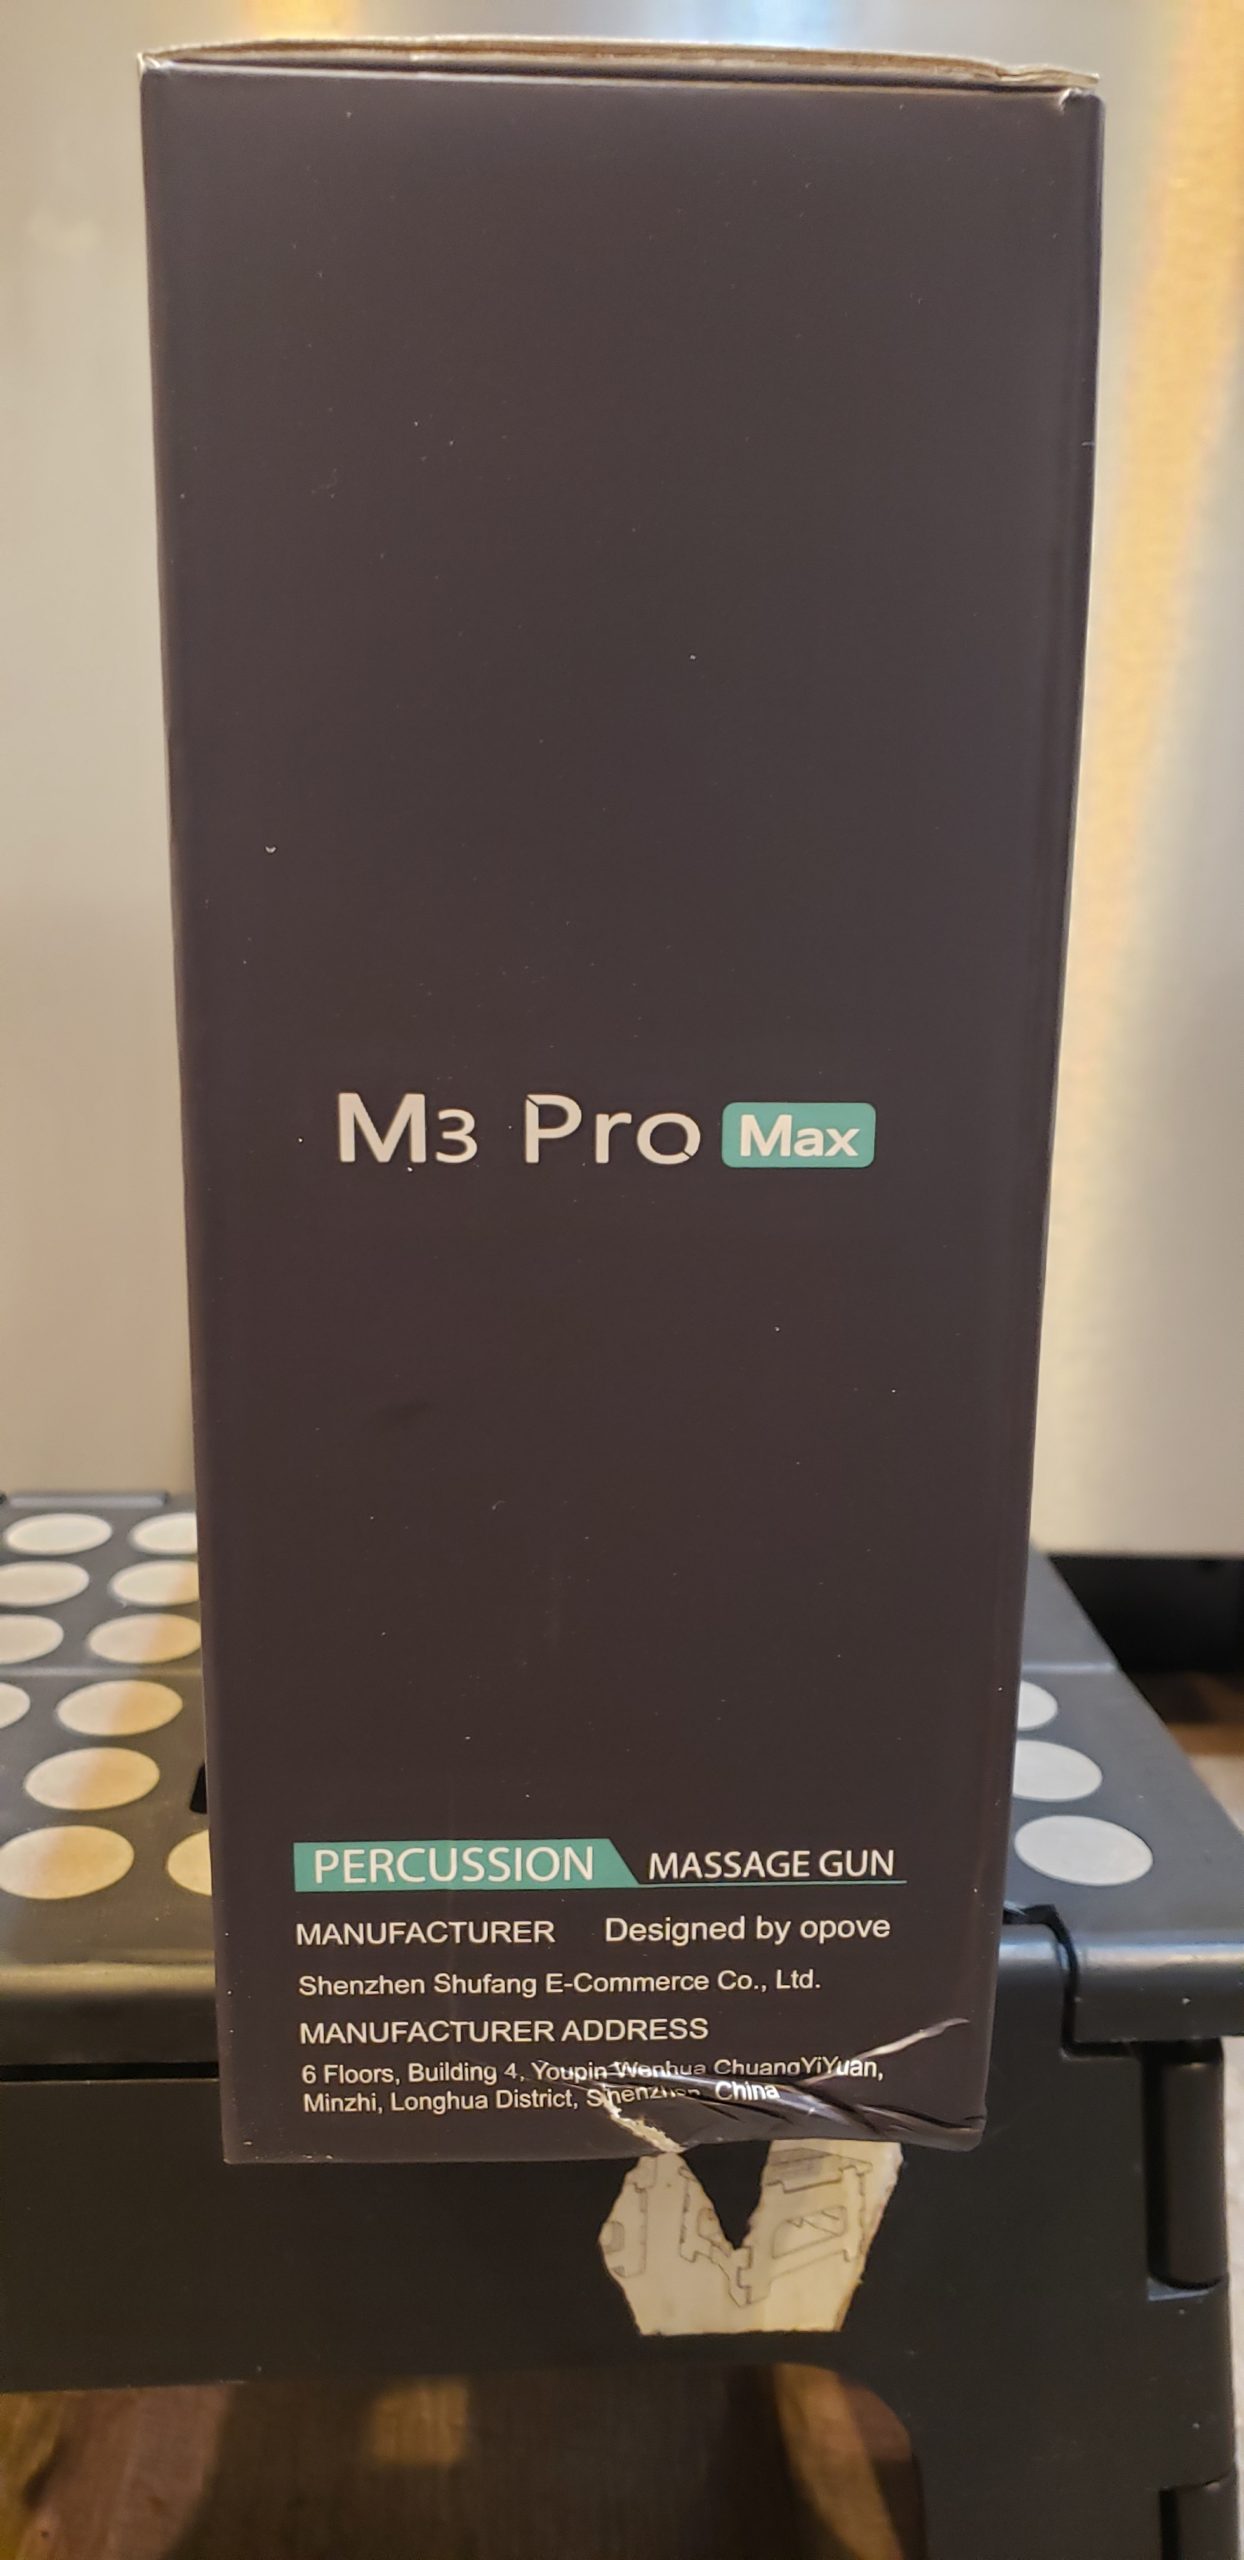 OPOVE M3 Pro Max Massage Gun - side of box